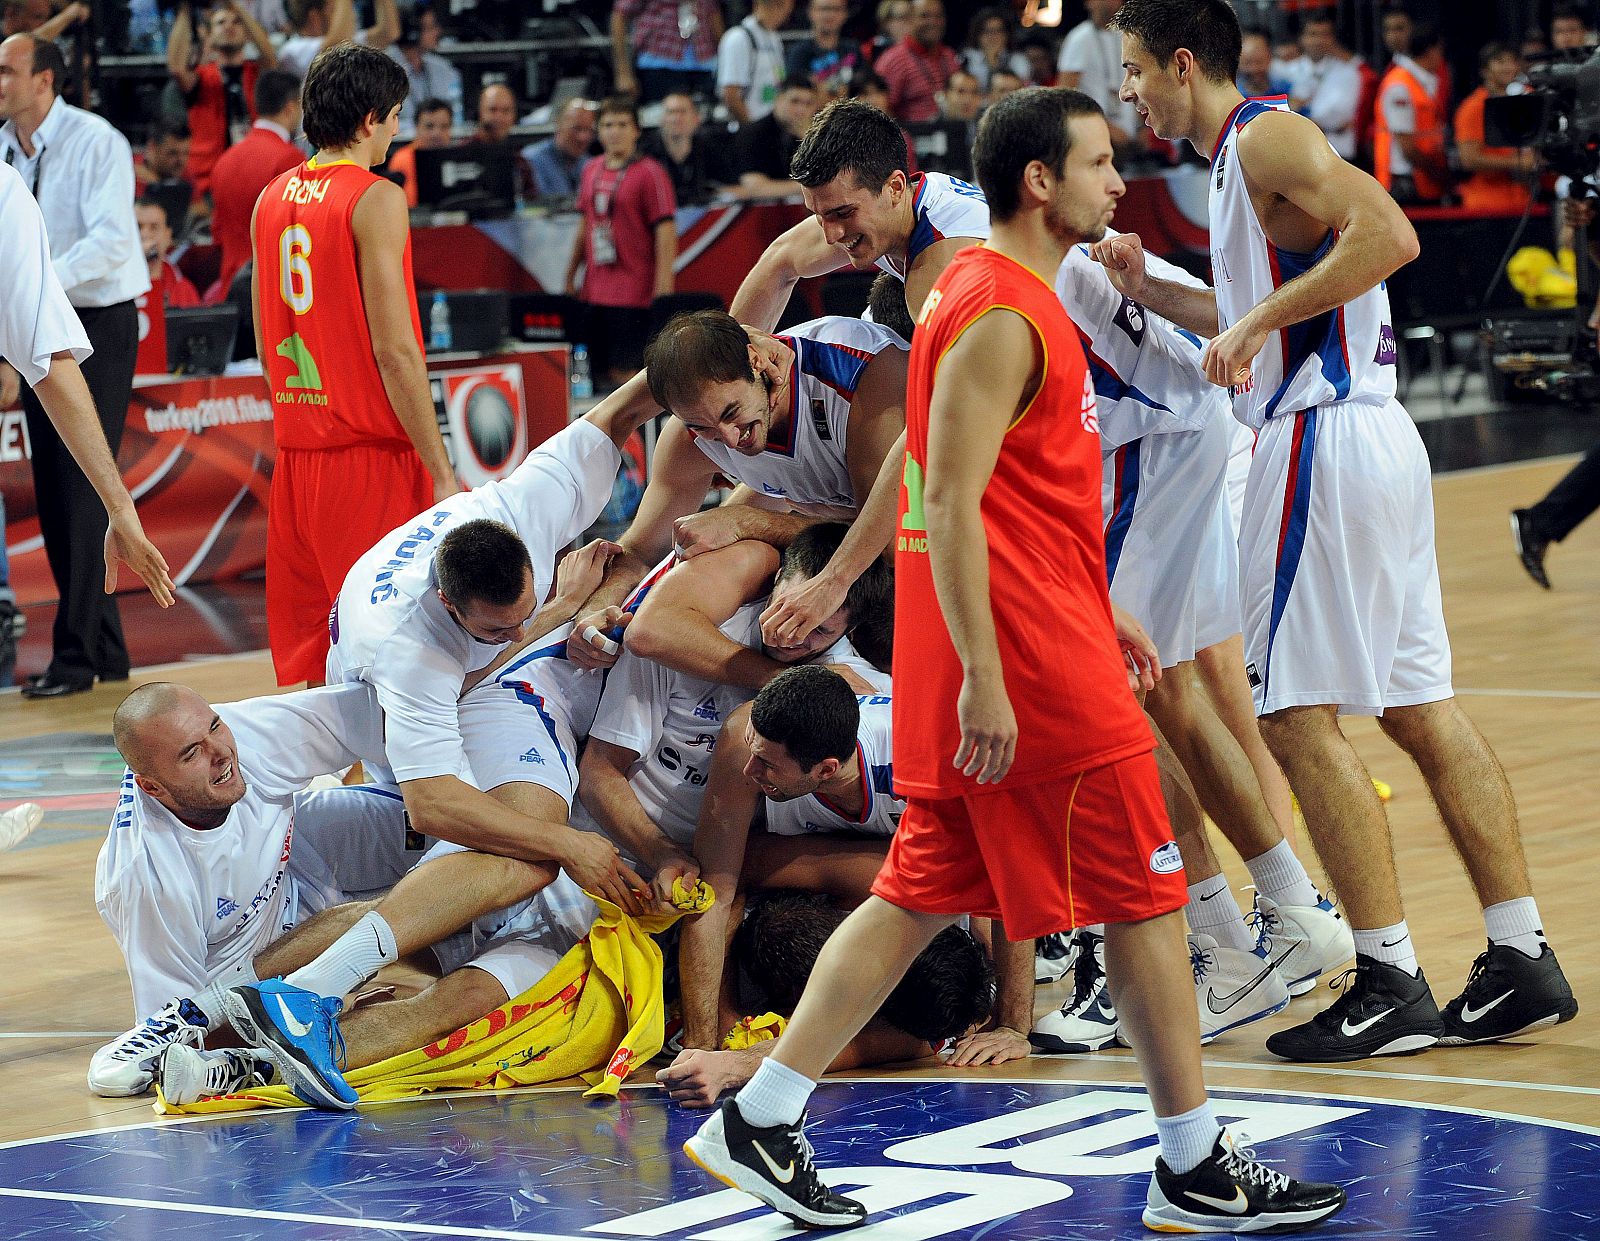 Serbia ha dejado fuera a toda una campeona del mundo, España, en un gran partido resuelto en los últimos segundos (92-89).